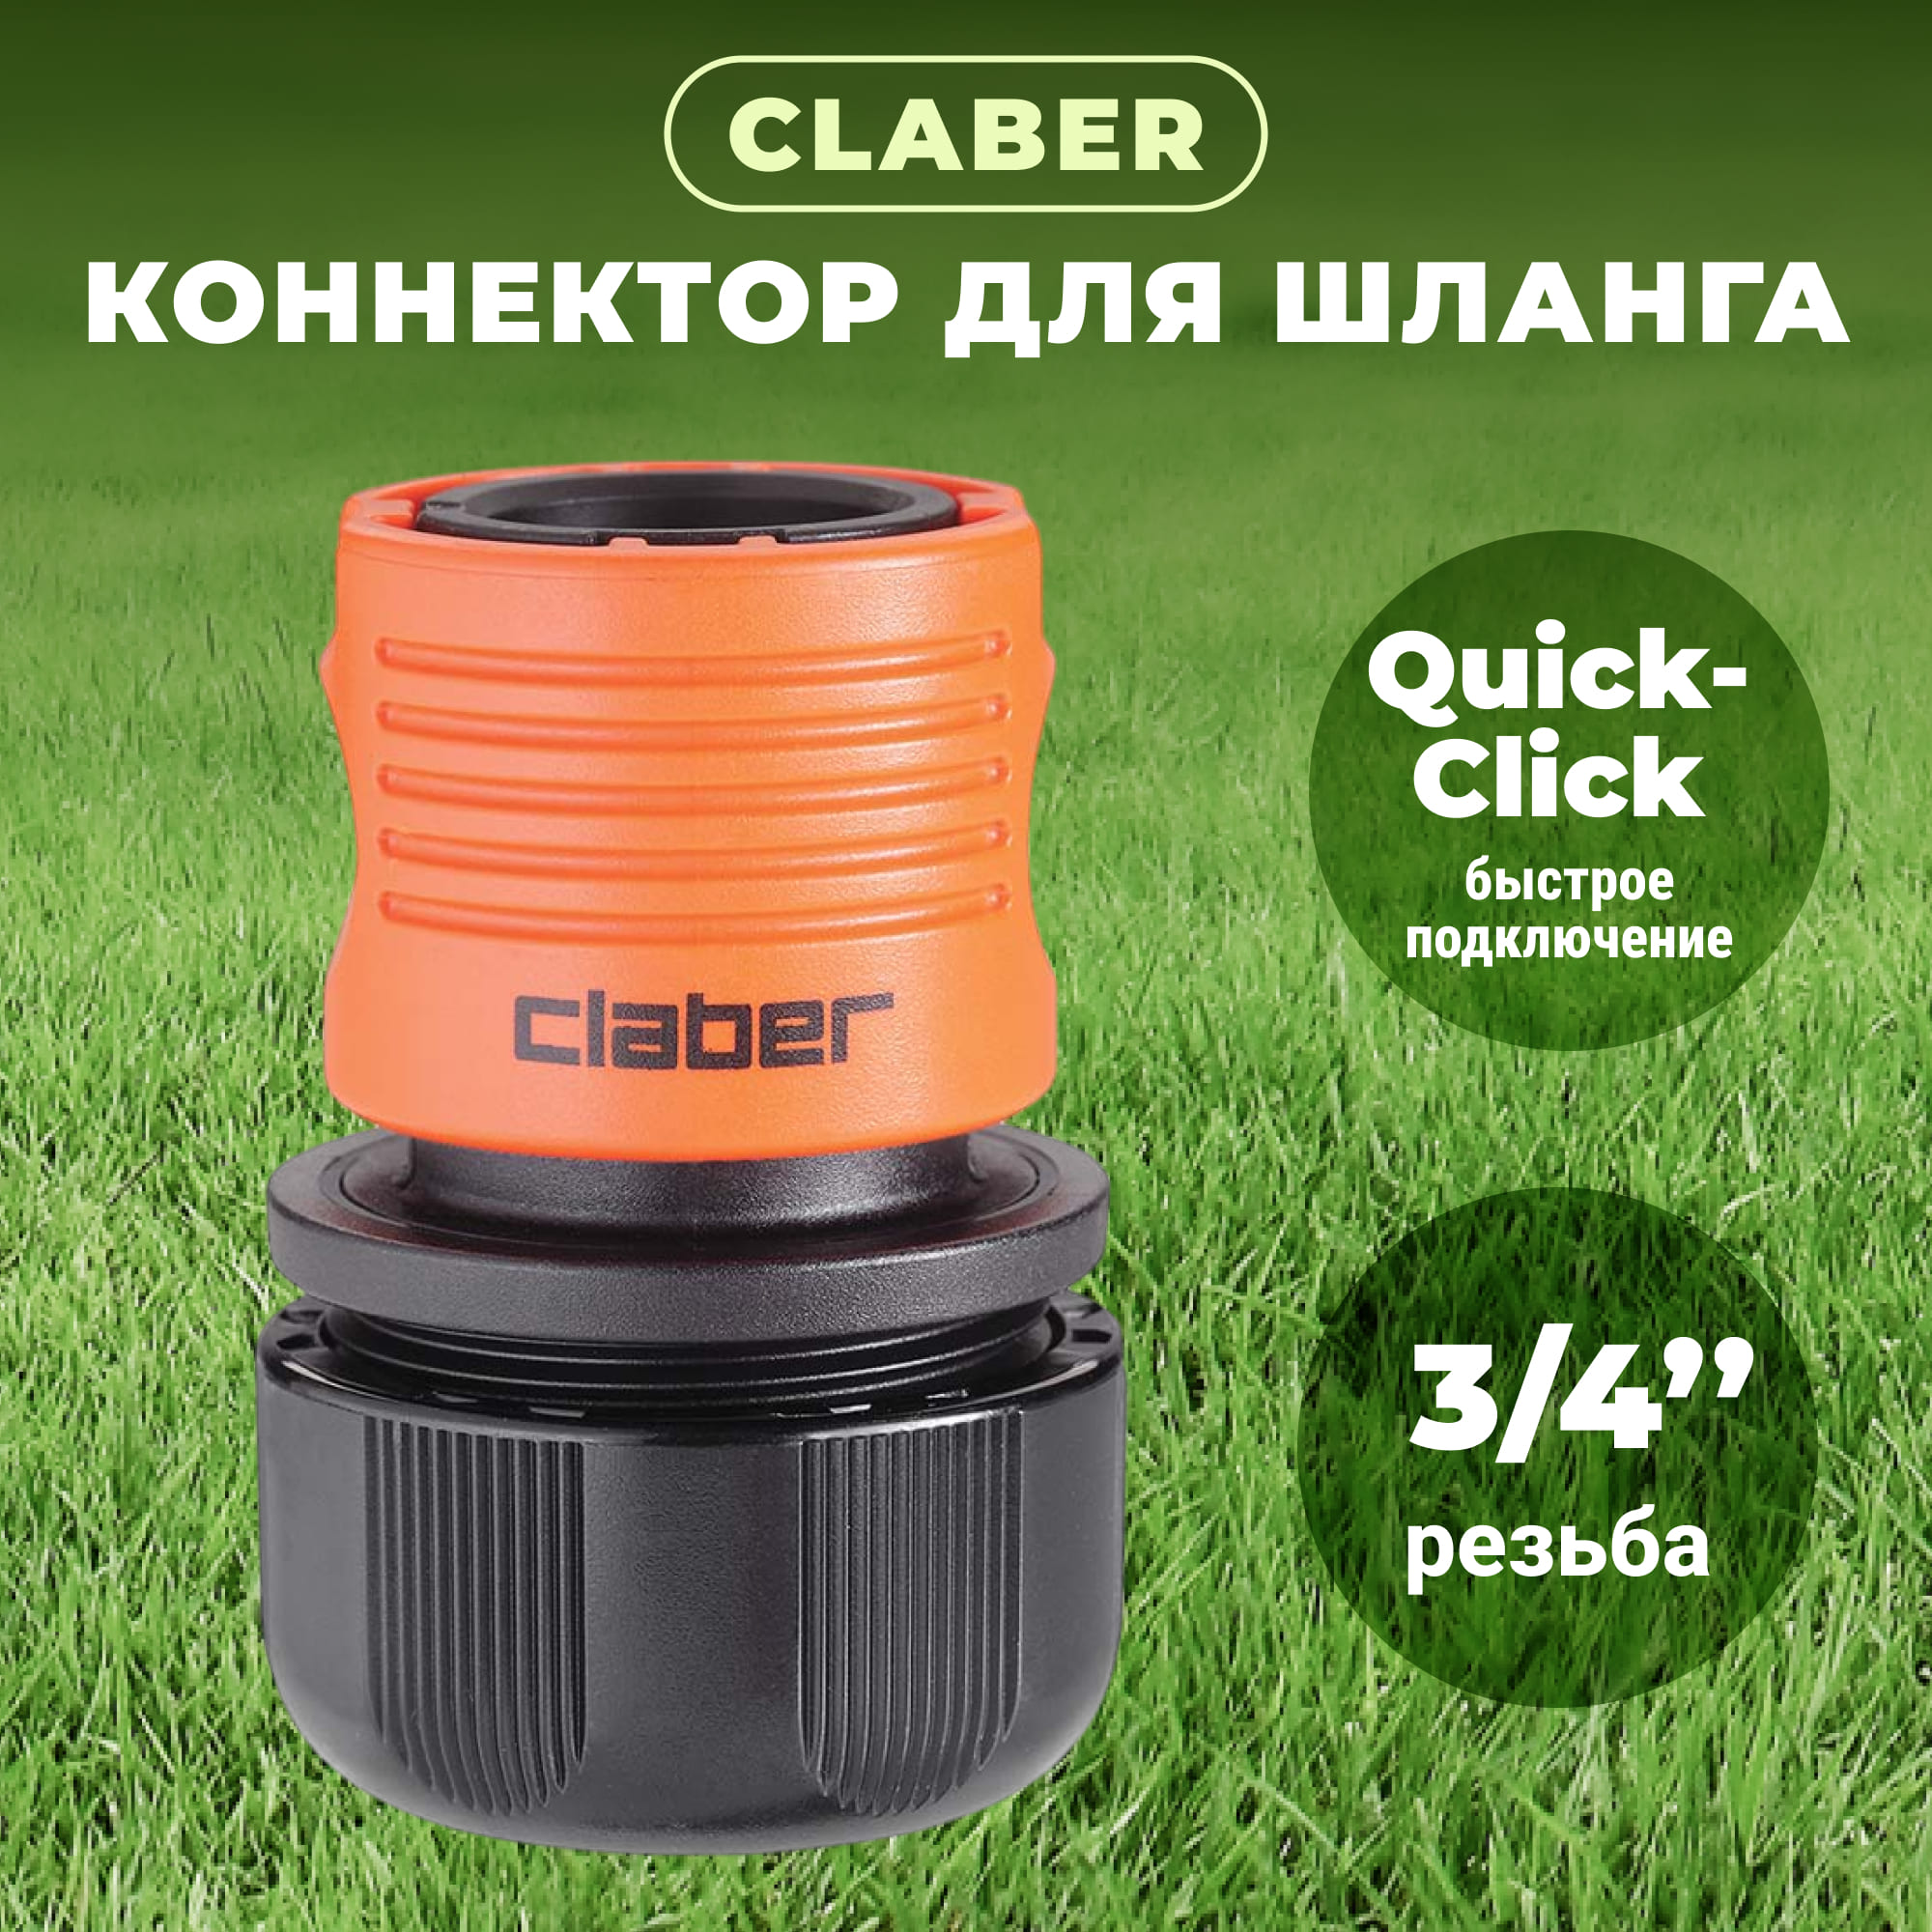 Коннектор Claber  3/4 8609, цвет черный - фото 2